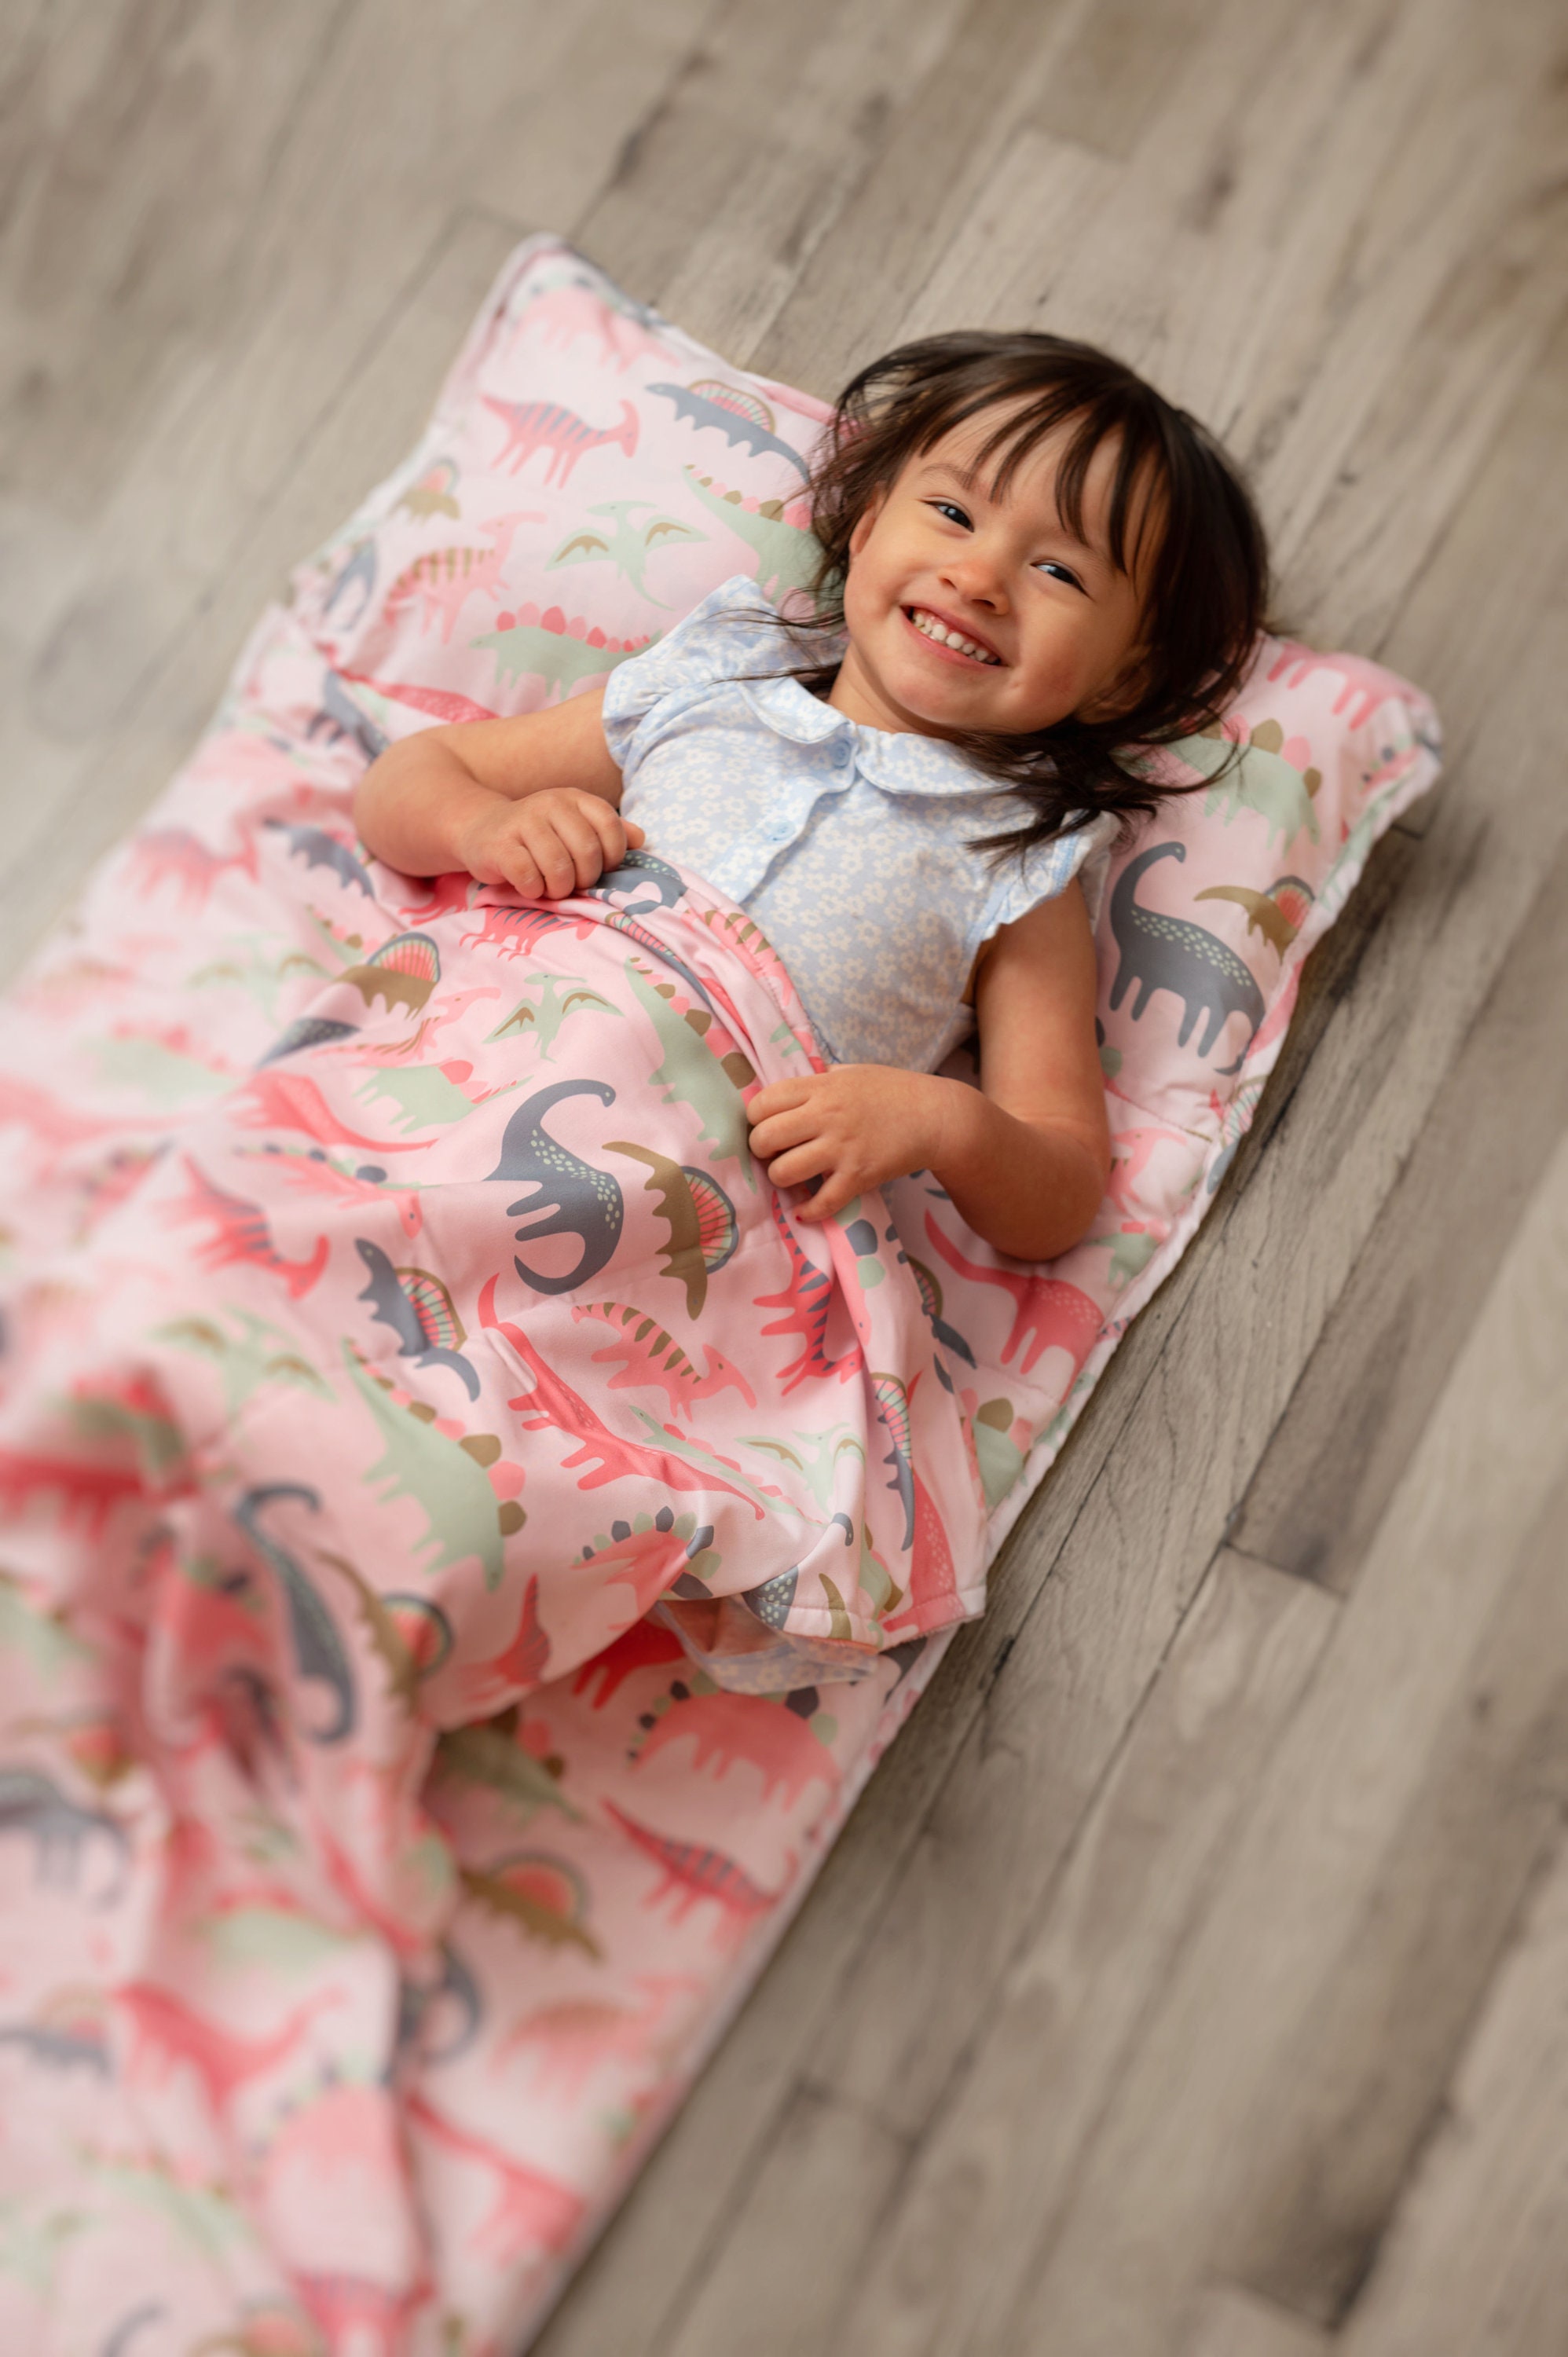 Colchonetas de siesta para niños pequeños con diseño de unicornio para niños  y niñas en edad